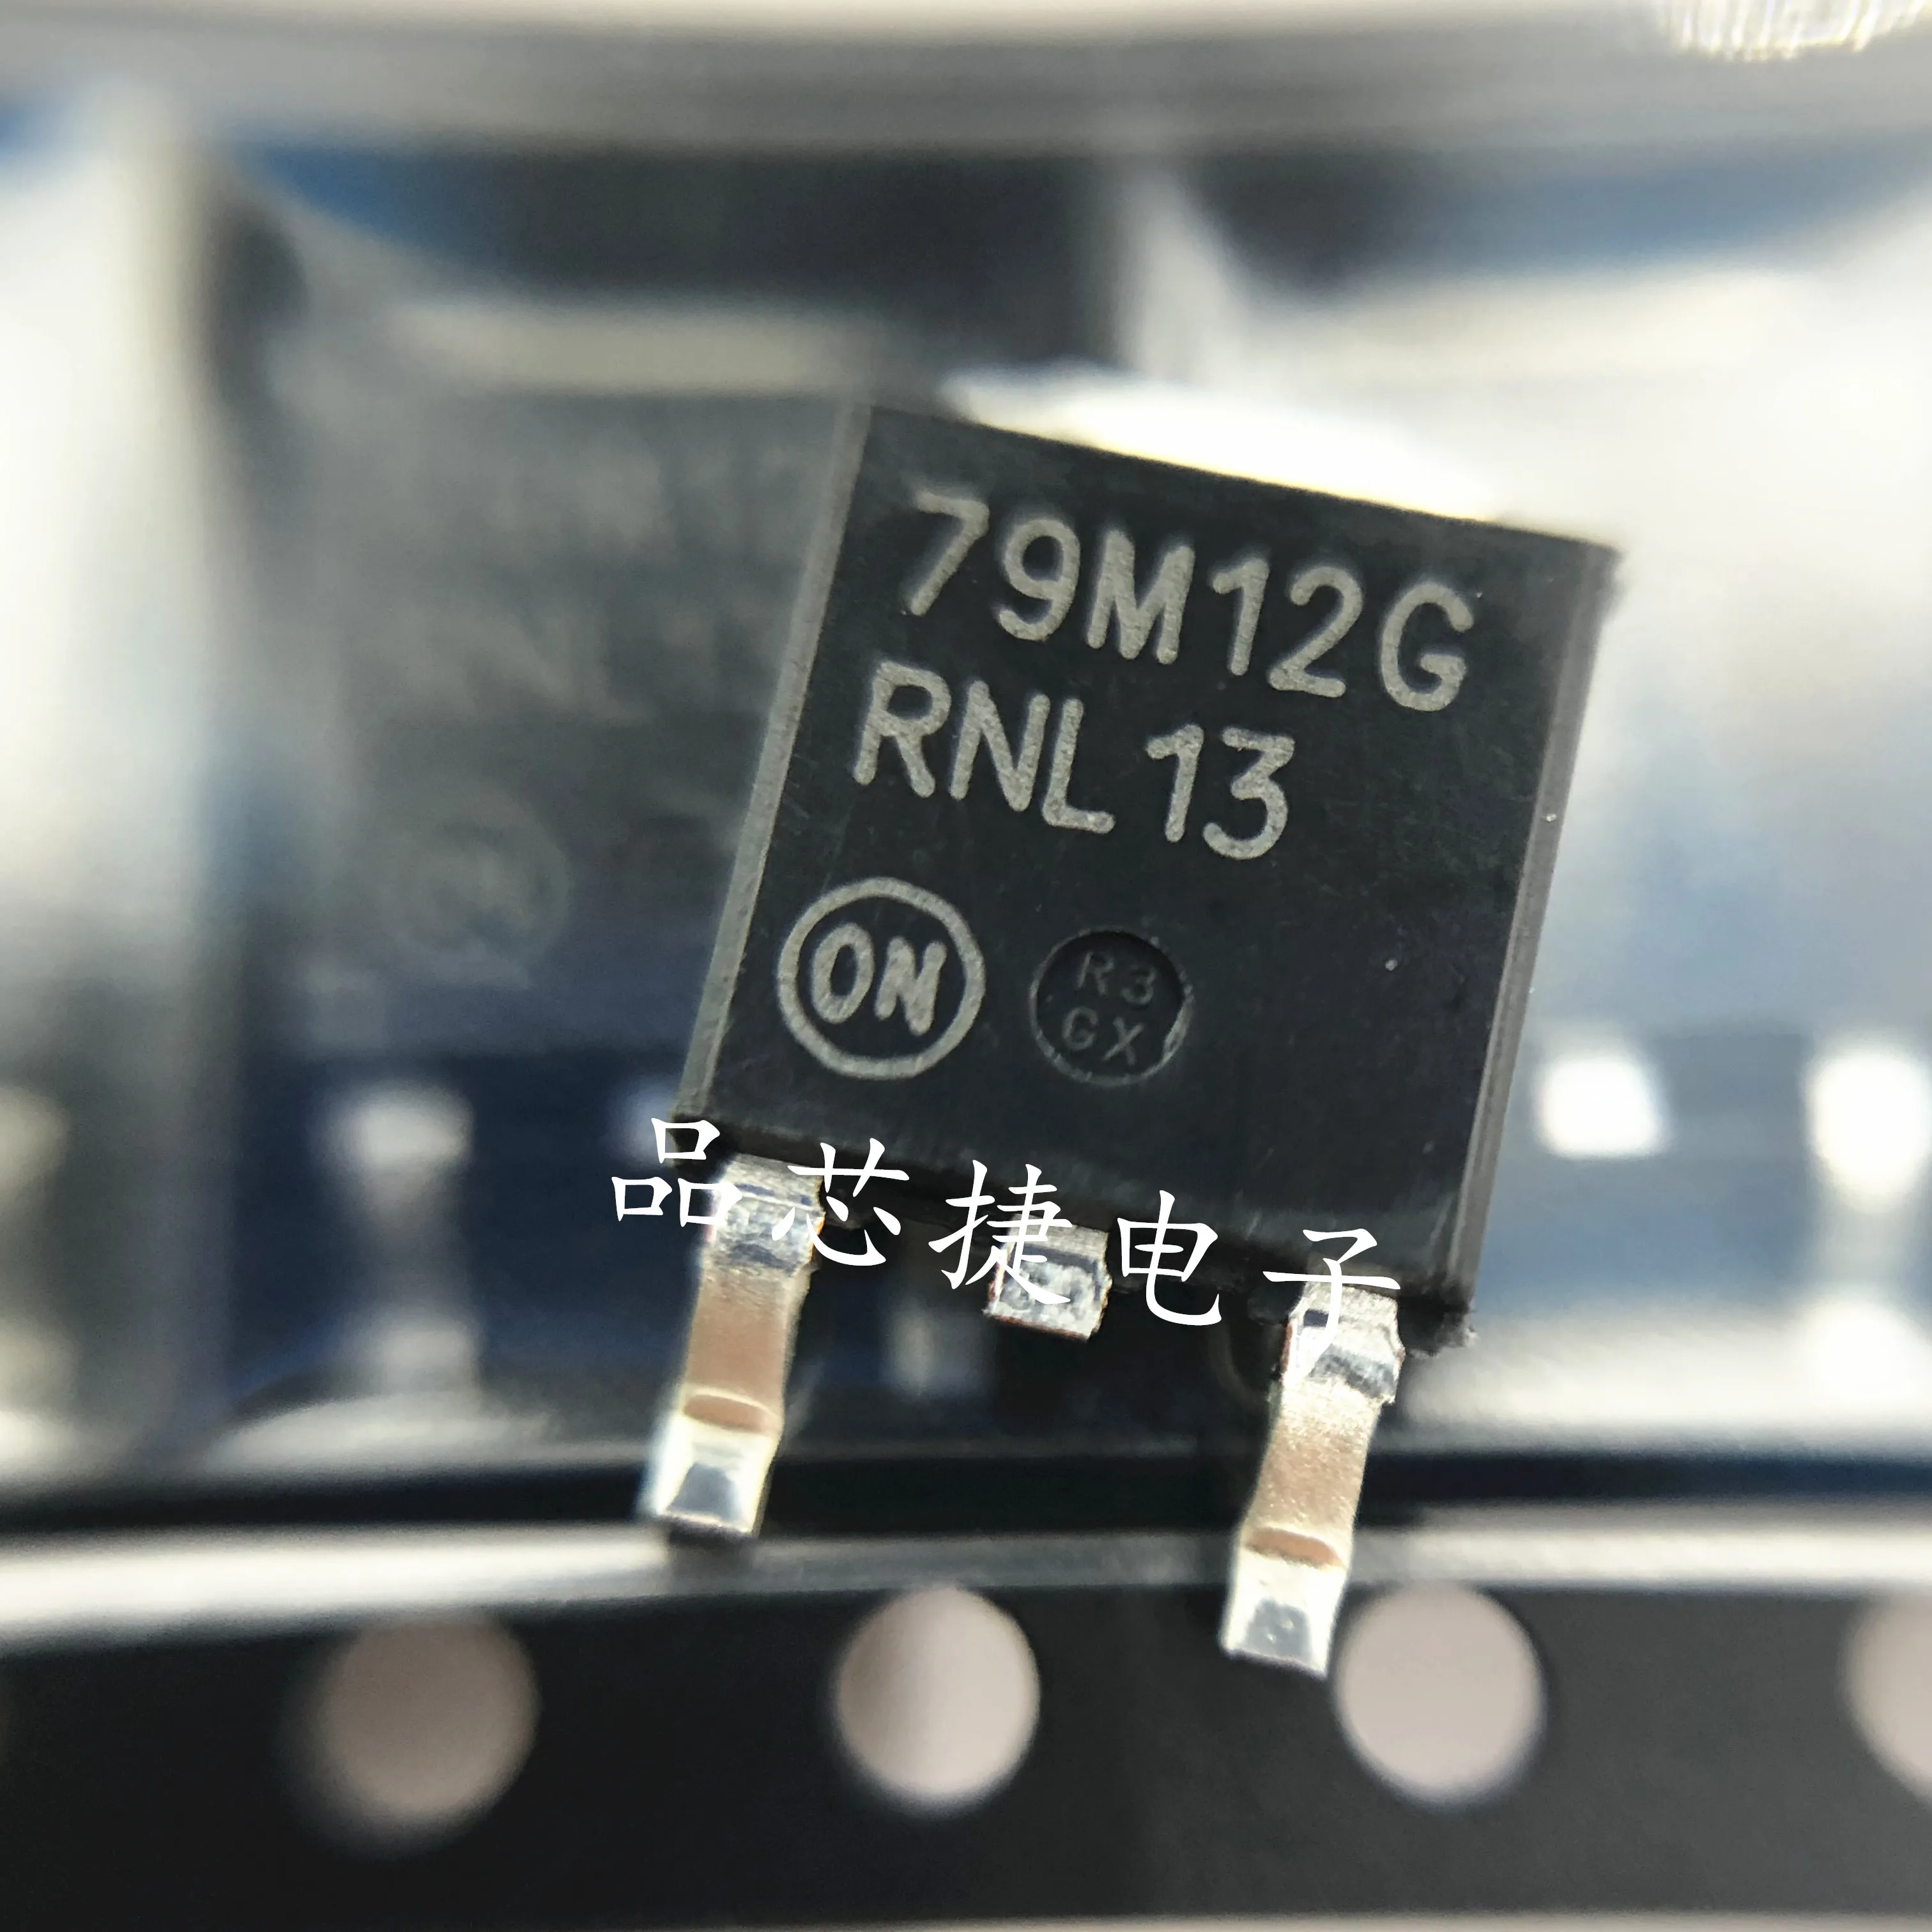 

10 шт. Оригинальный Новый MC79M12CDTRKG Шелковый экран 79M12G TO252 LDO линейный регулятор IC чип